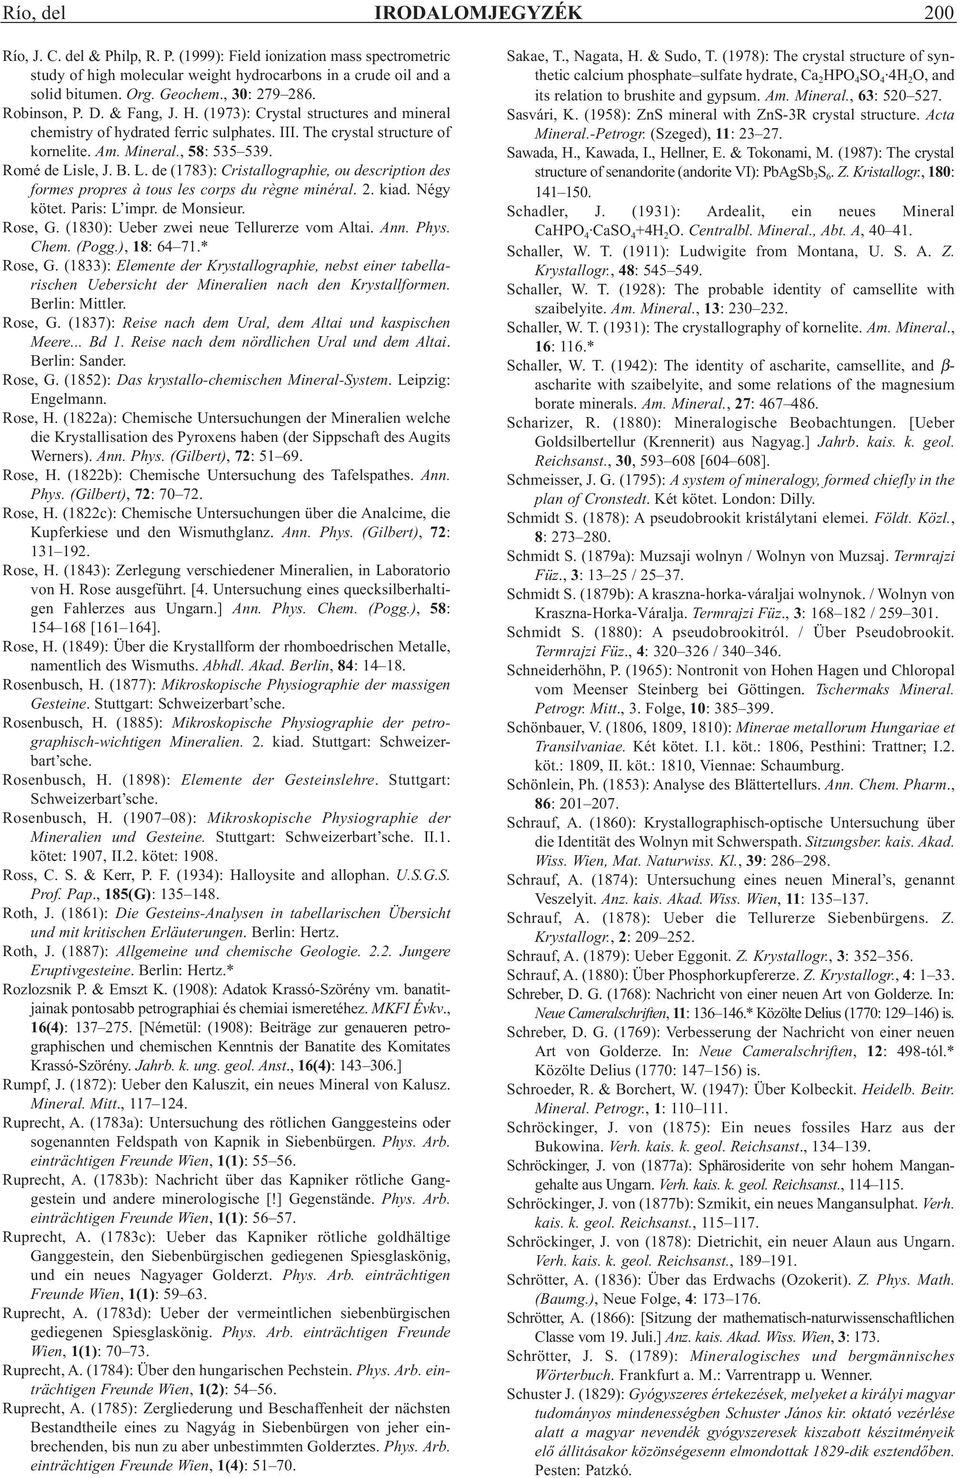 Romé de Lisle, J. B. L. de (1783): Cristallographie, ou description des formes propres à tous les corps du règne minéral. 2. kiad. Négy kötet. Paris: L impr. de Monsieur. Rose, G.